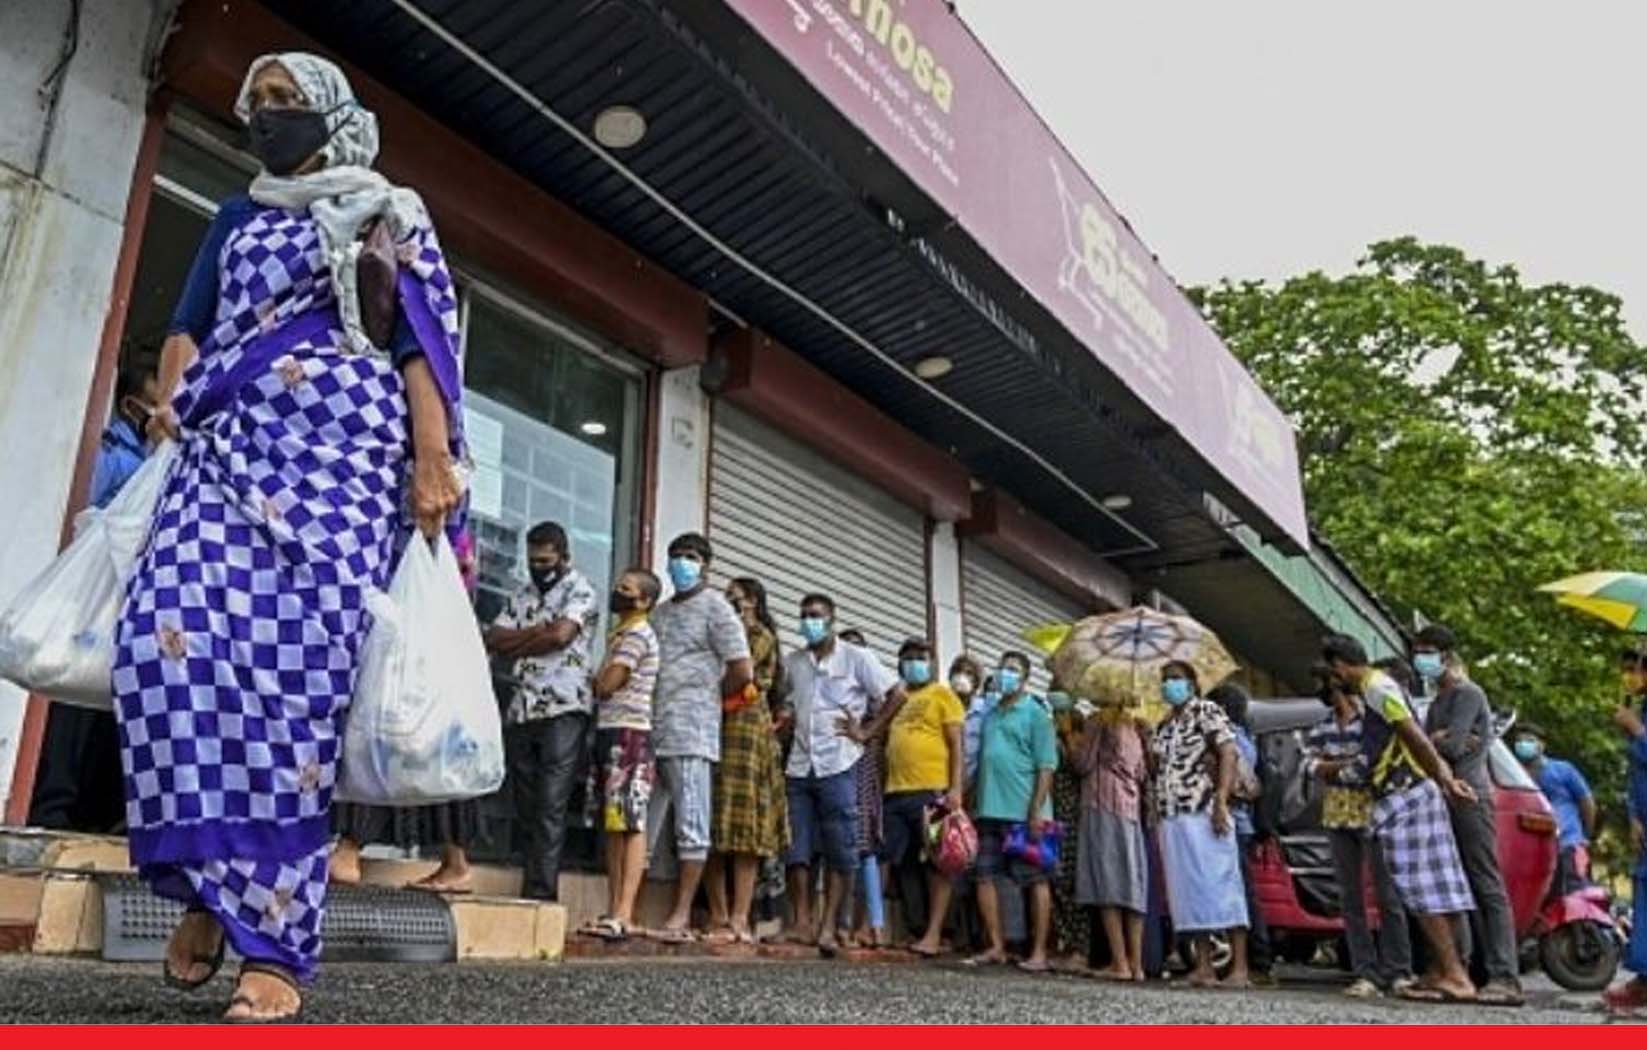 श्रीलंका में दवाओं की भारी कमी, आपातकालीन स्वास्थ्य स्थिति घोषित